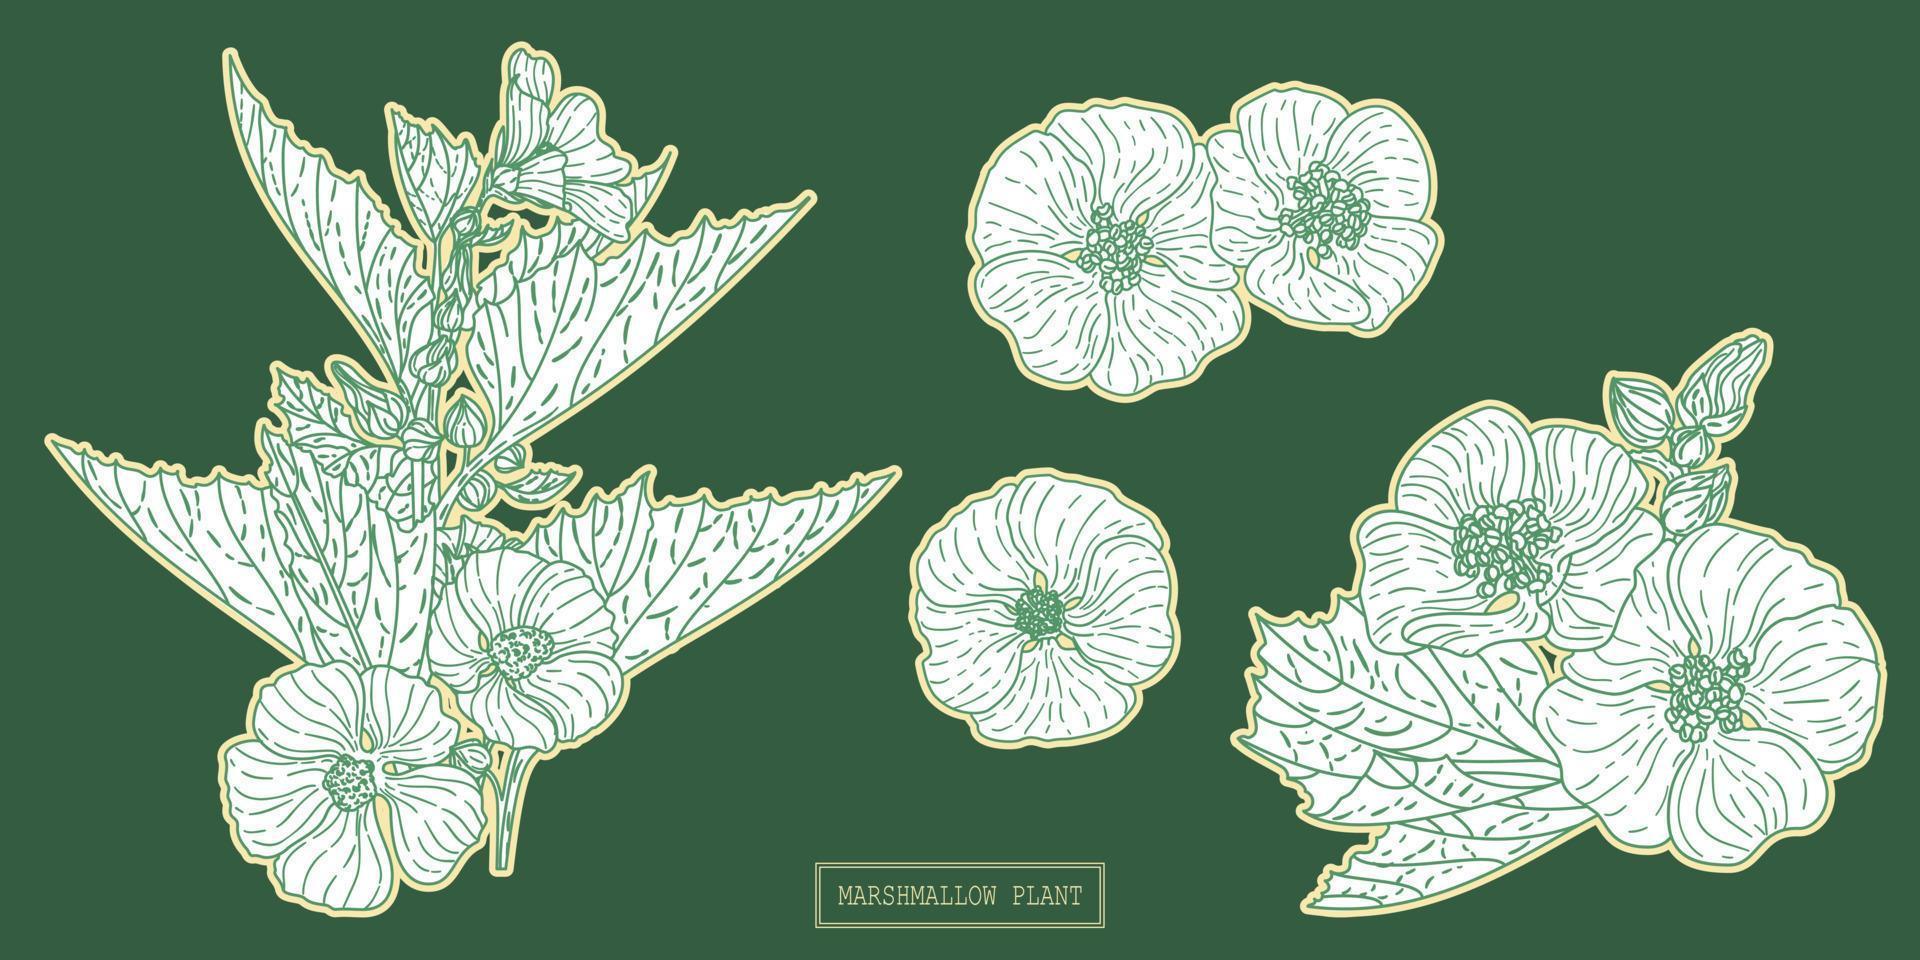 pianta medica di marshmallow, illustrazione botanica disegnata a mano in una linea d'arte vettore